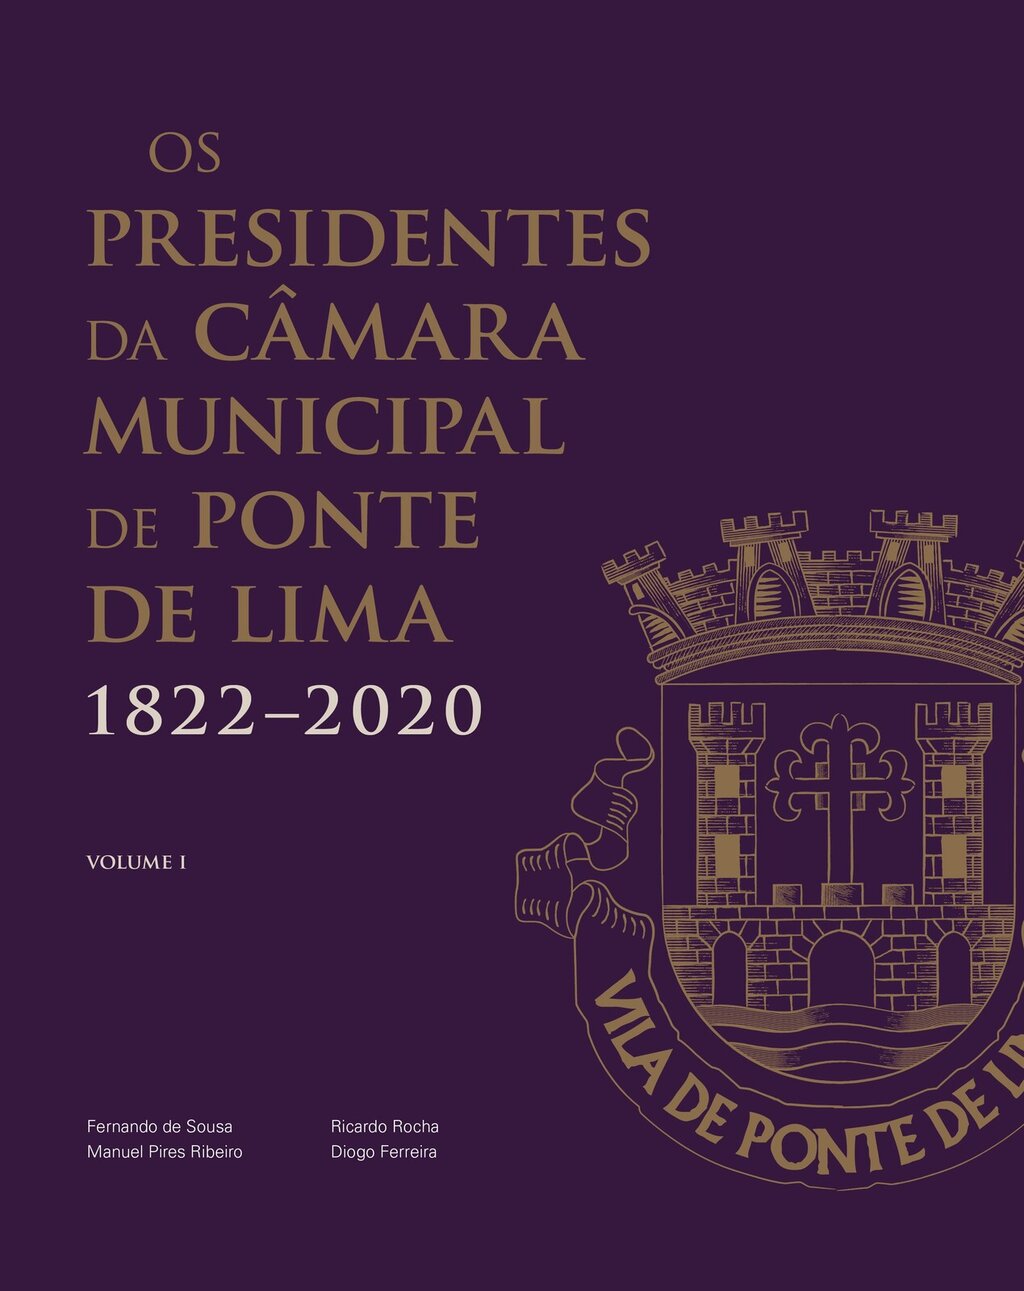 Capa livro os presidentes da camara municipal de ponte de lima 1822 2020 1 1024 2500